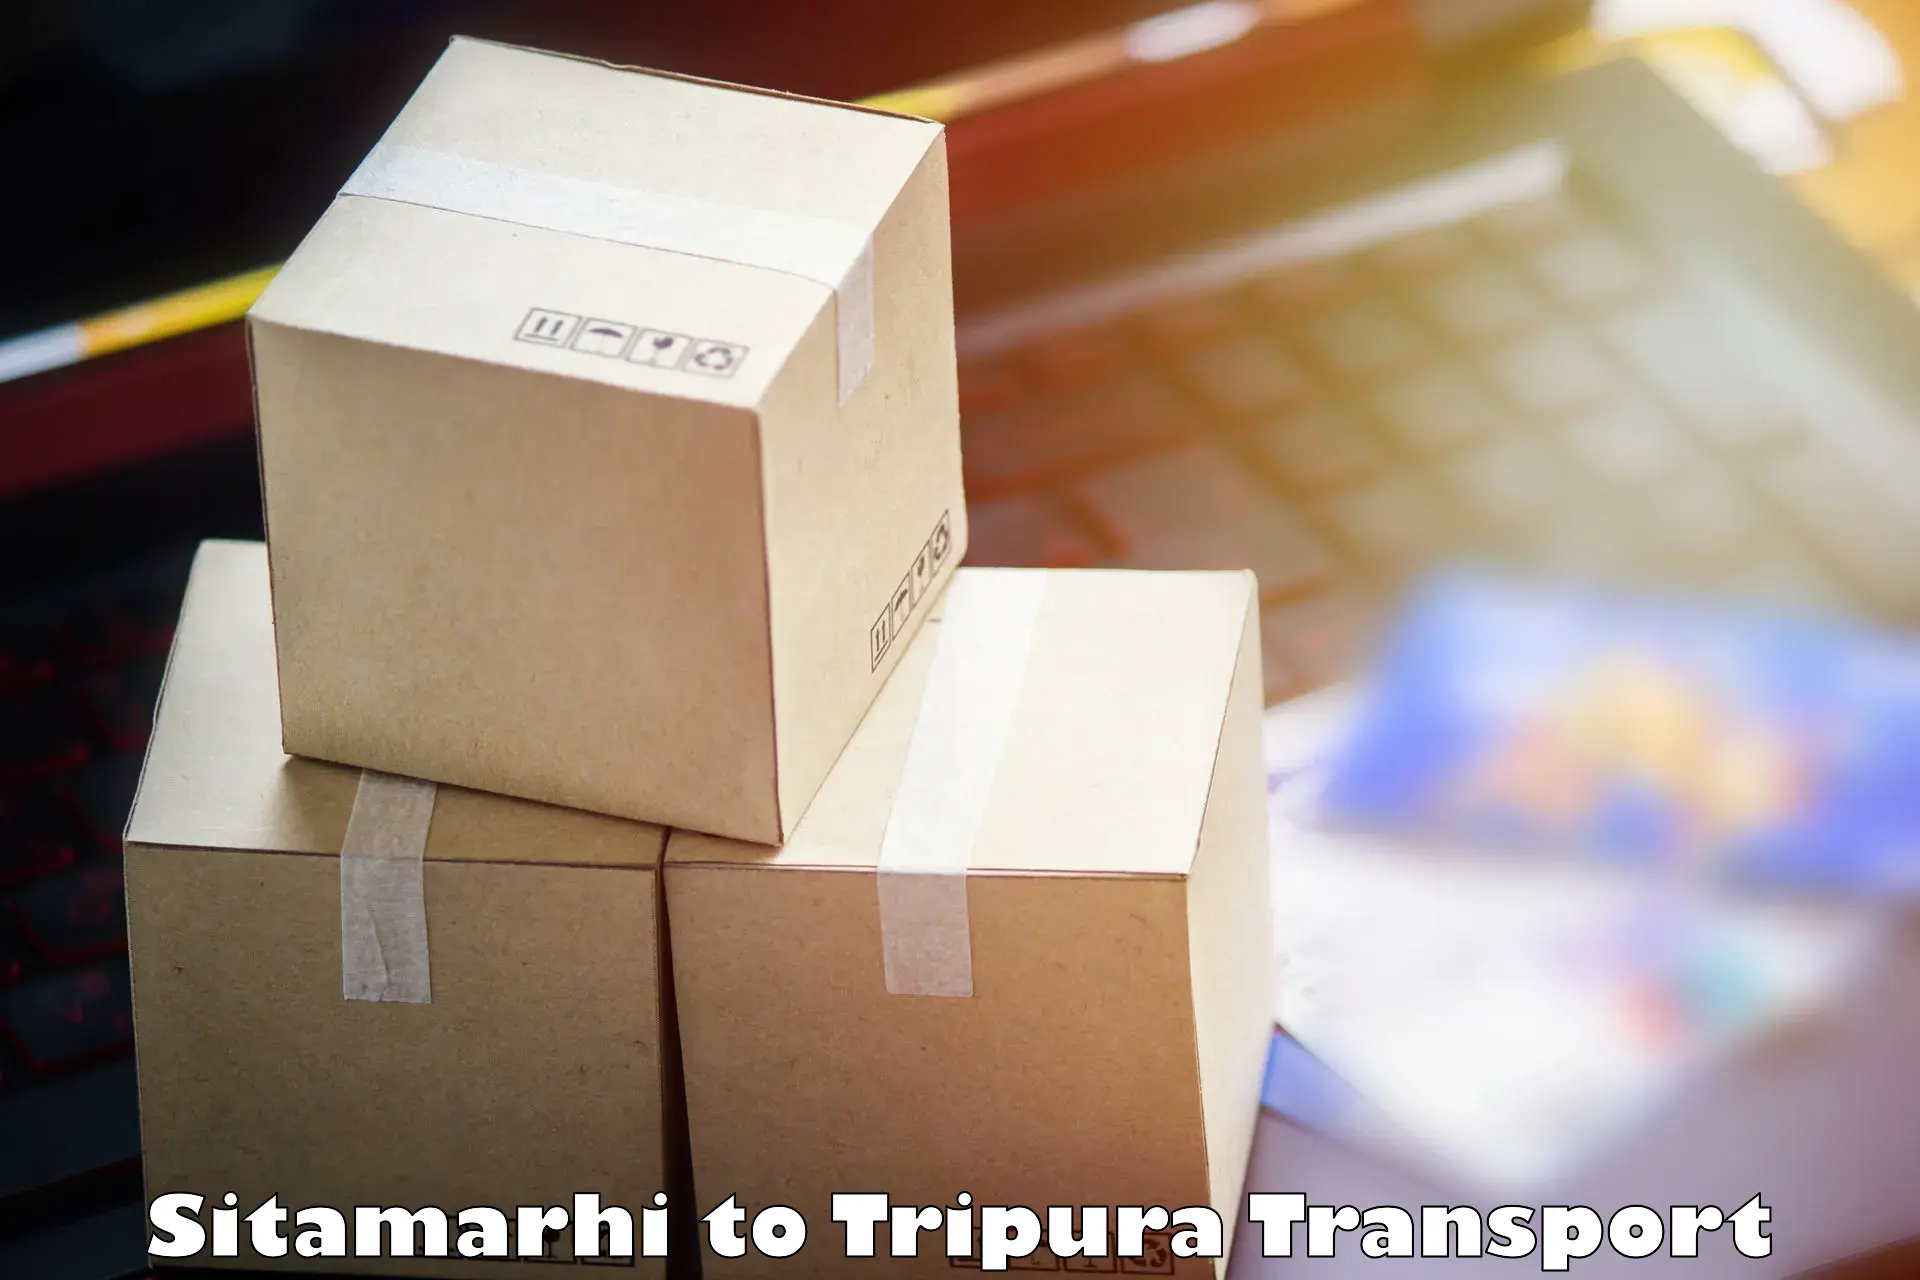 Interstate transport services in Sitamarhi to Amarpur